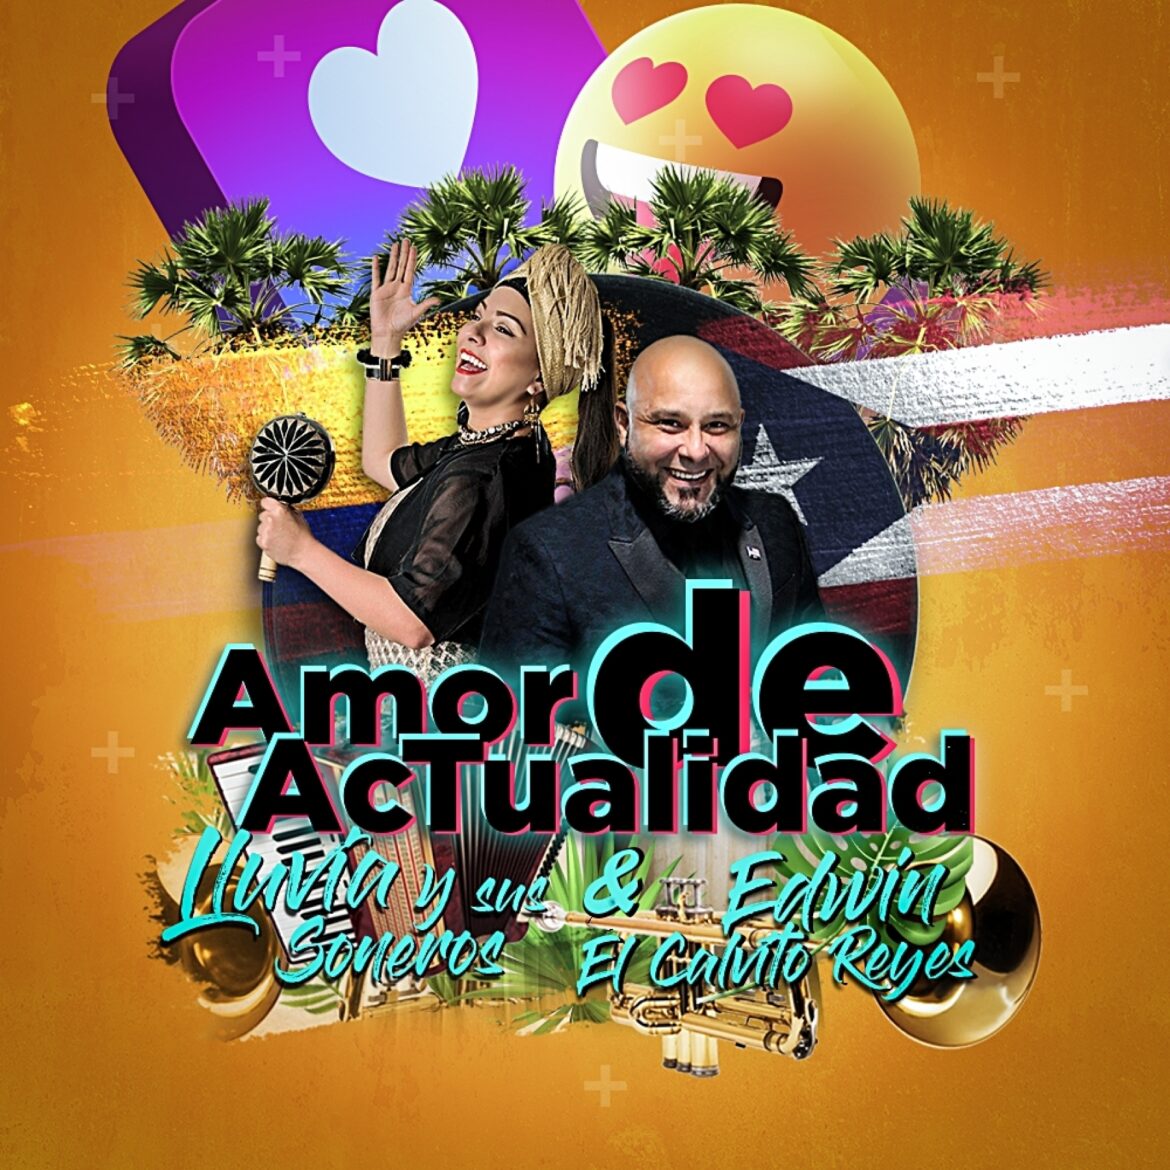 Edwin “El Calvito” Reyes & Lluvia y Sus Soneros presentan “Amor de Actualidad”